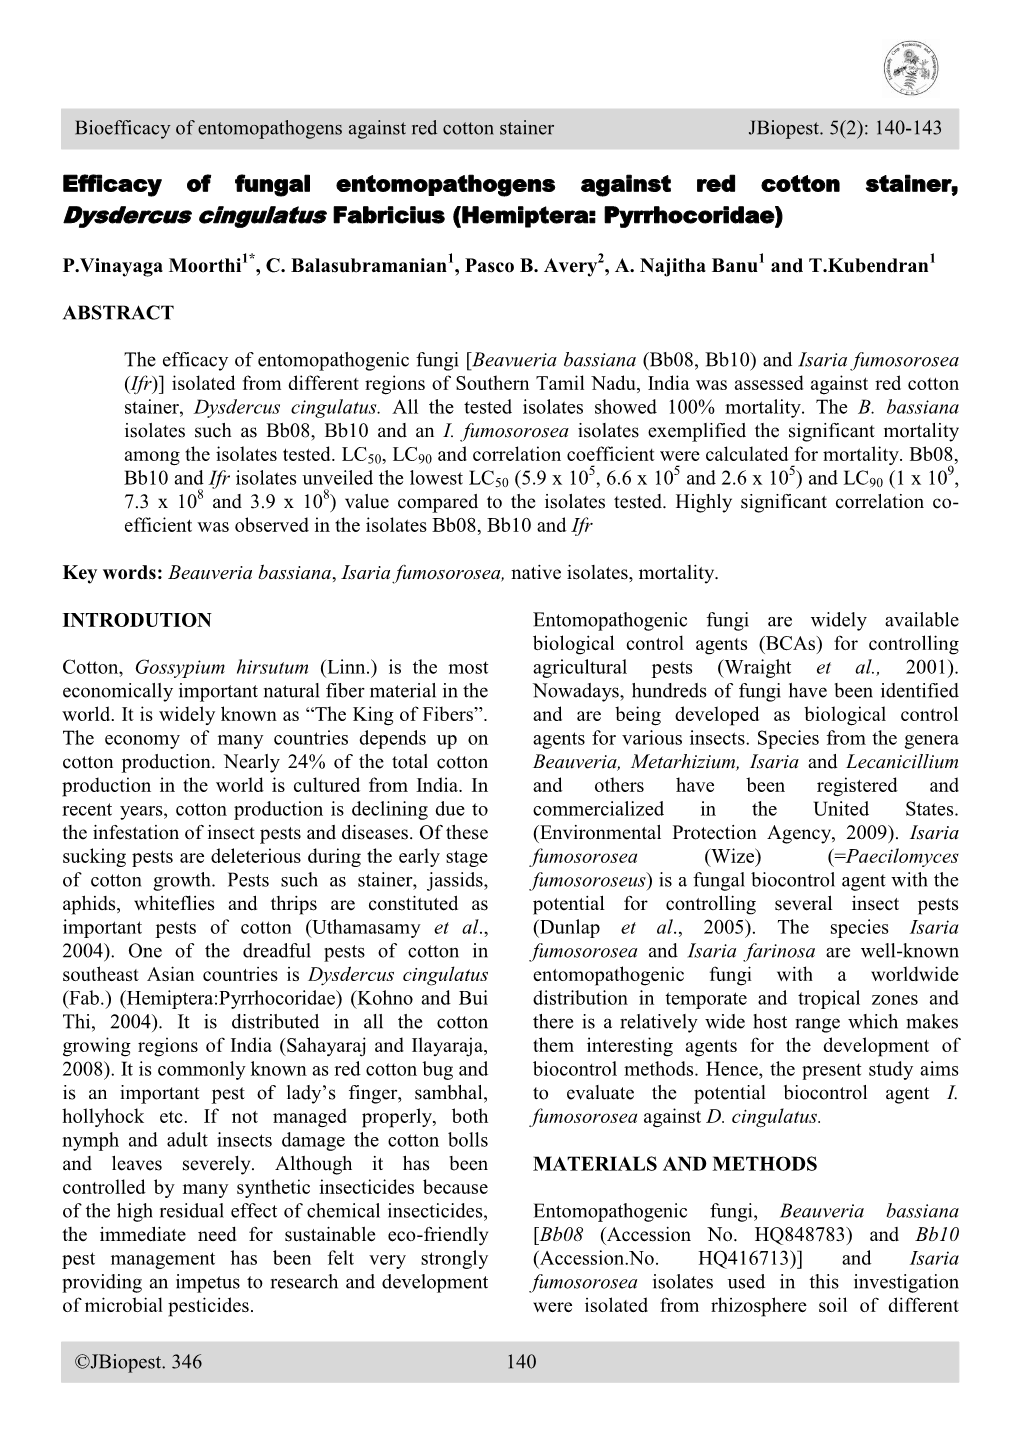 Efficacy of Fungal Entomopathogens Against Red Cotton Stainer, Dysdercus Cingulatus Fabricius (Hemiptera: Pyrrhocoridae)